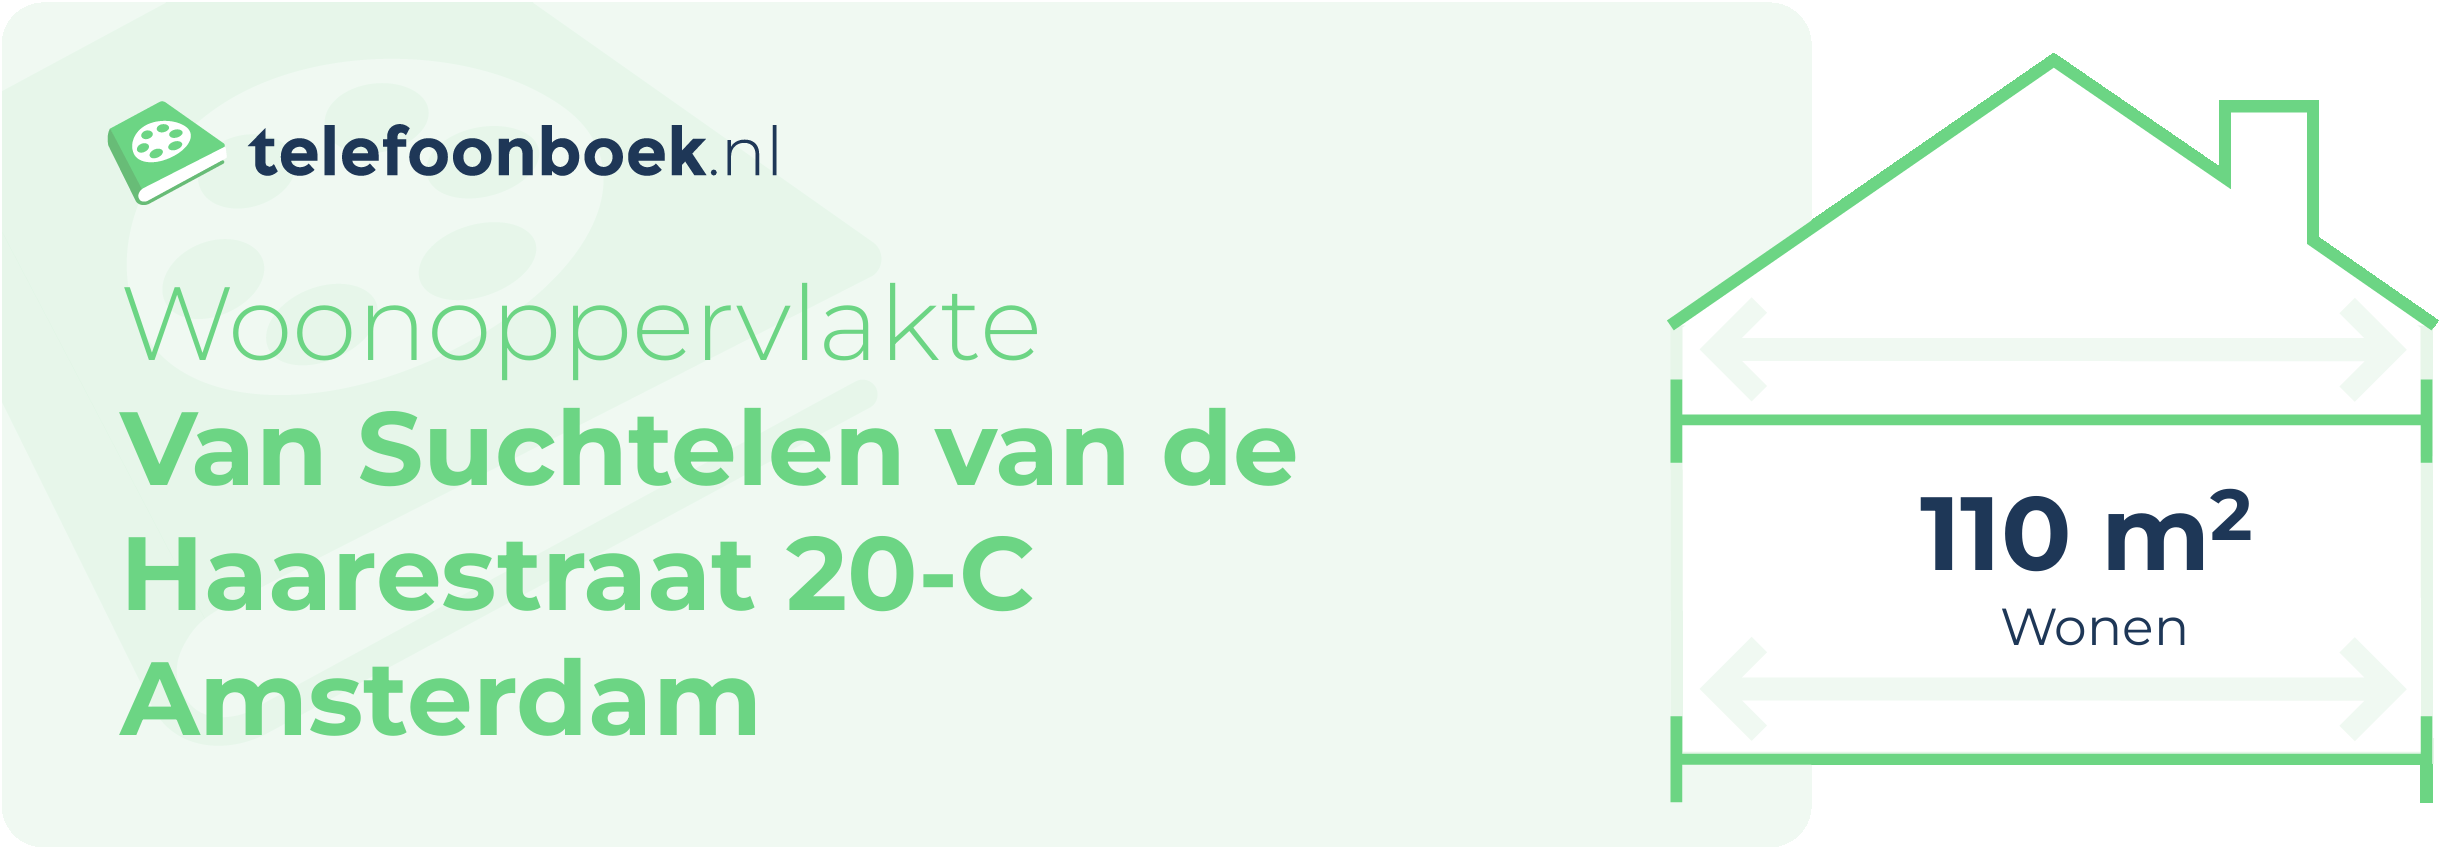 Woonoppervlakte Van Suchtelen Van De Haarestraat 20-C Amsterdam